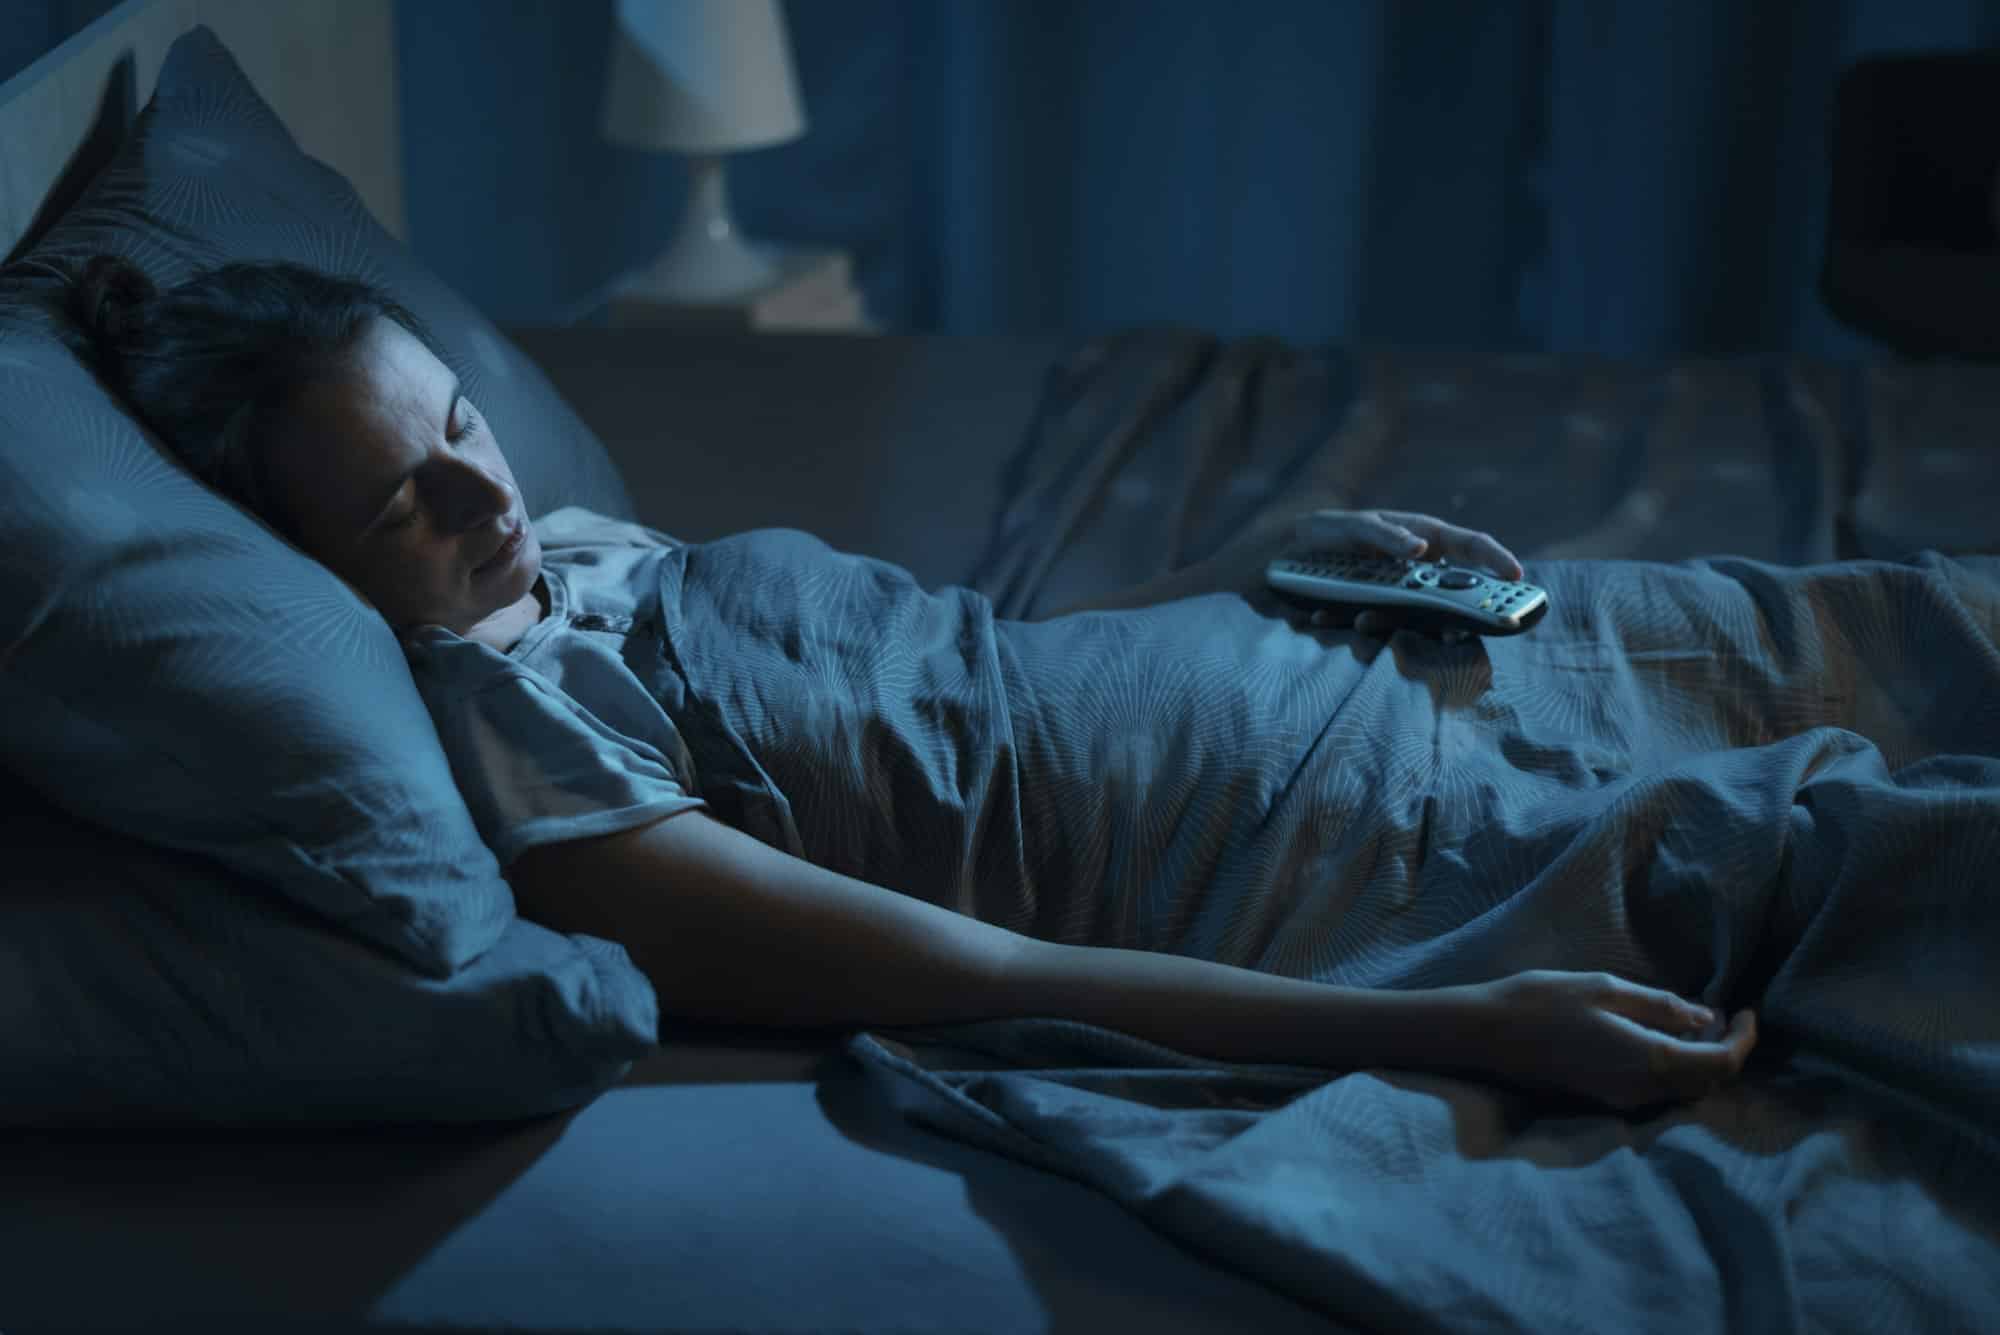 Ύπνος: Αν έχετε άπνοια και κοιμάστε λιγότερο από 7 ώρες αυξάνεται ο κίνδυνος θνησιμότητας